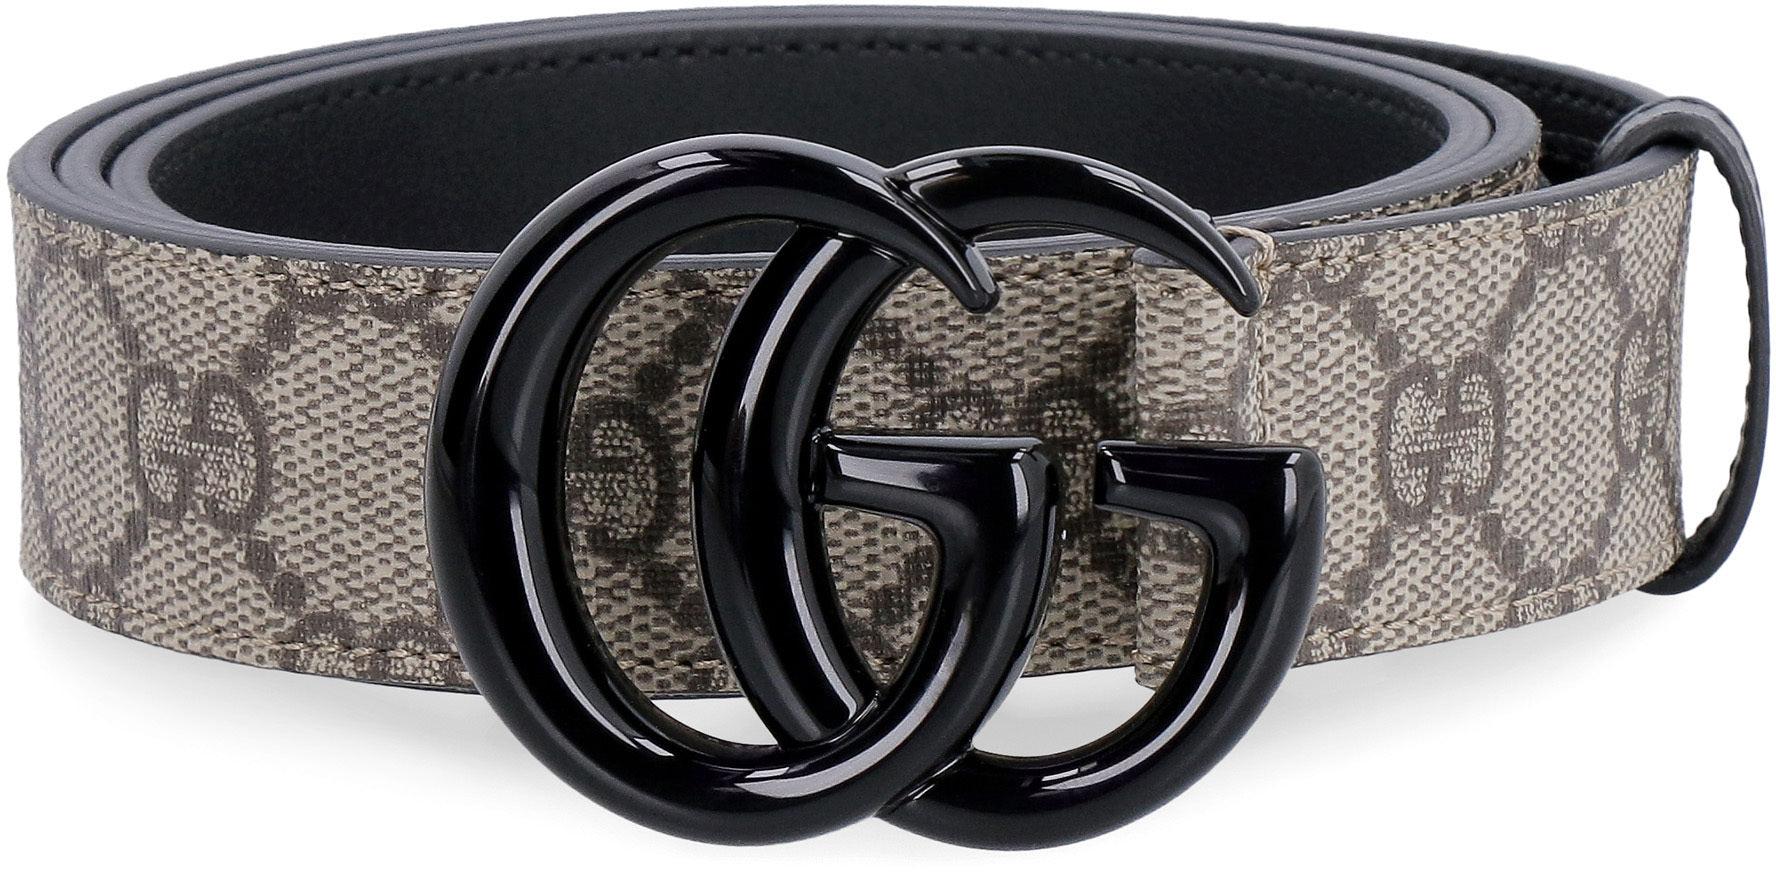 Supreme Belts for Men for sale